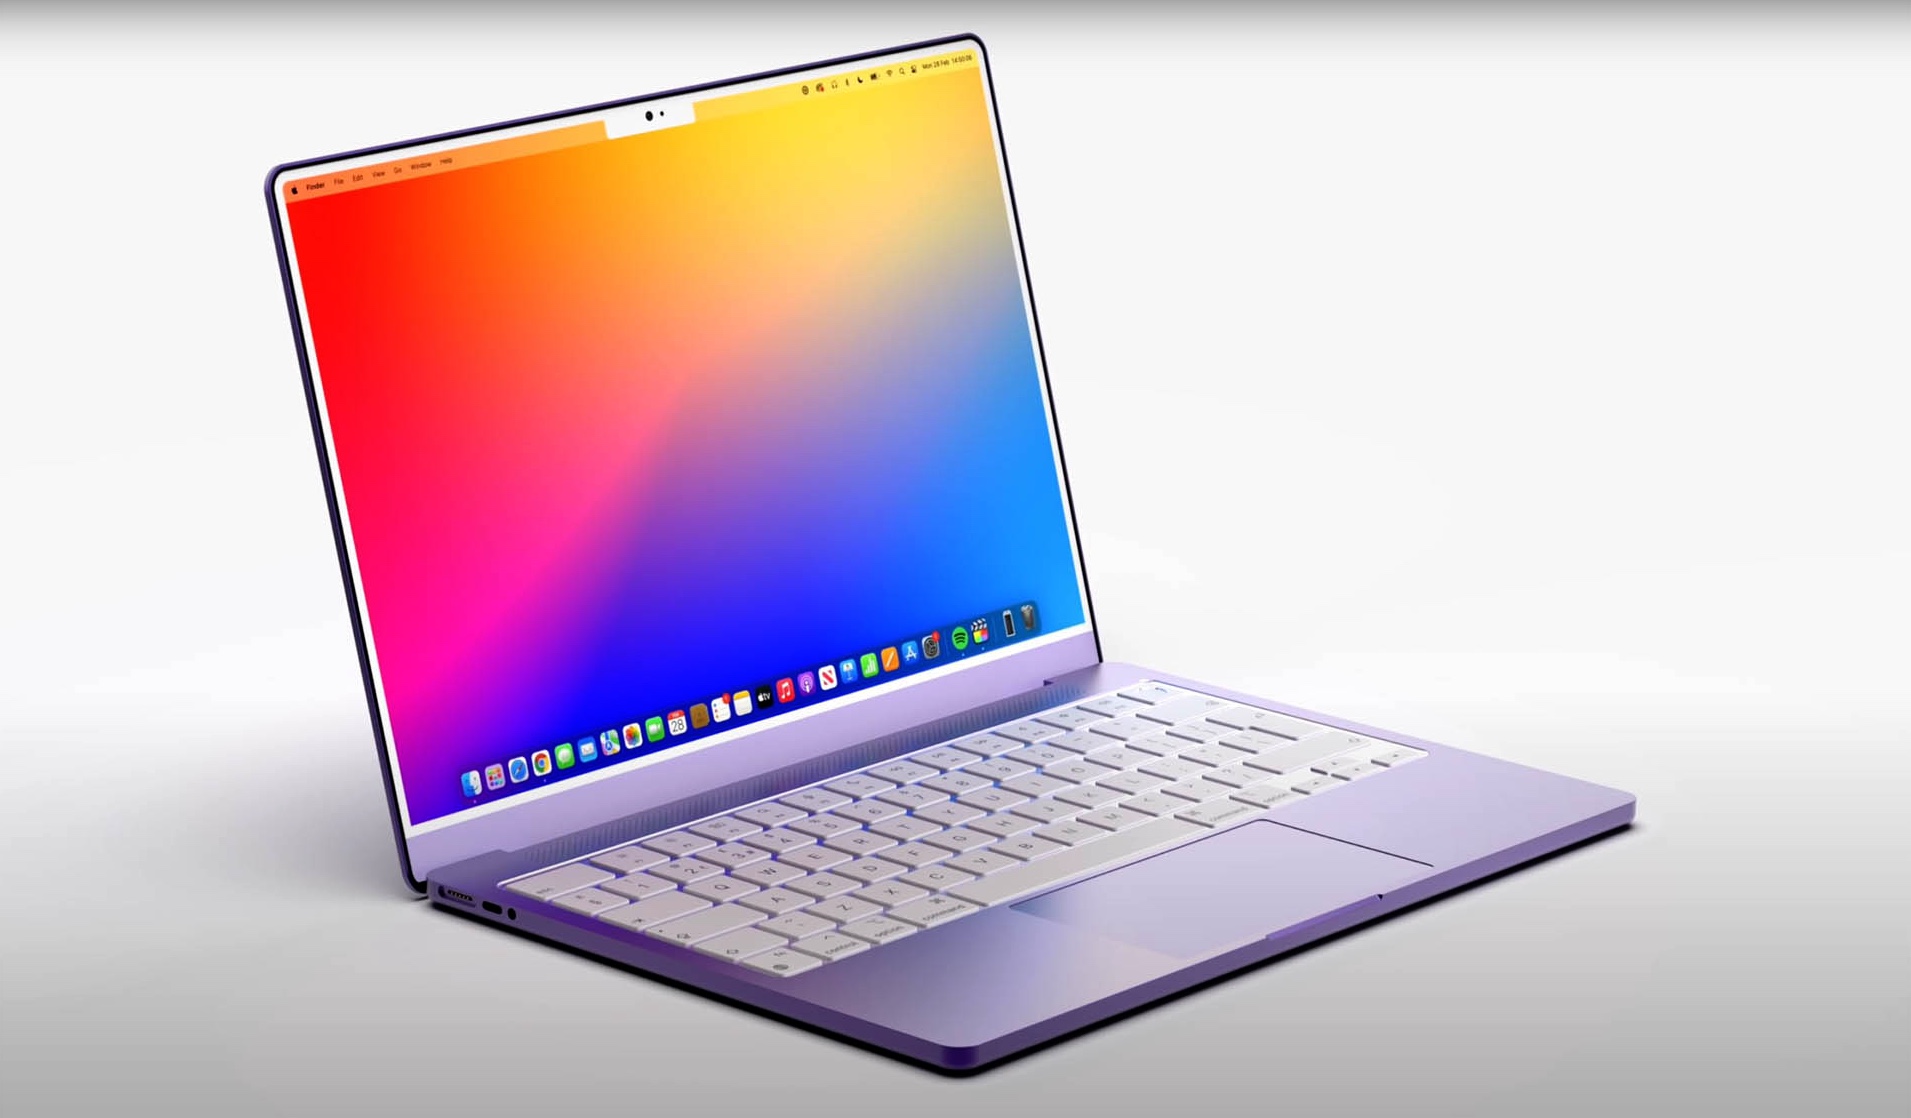 MacBook 2022 : qu'attendez-vous du nouveau portable siglé Apple ?